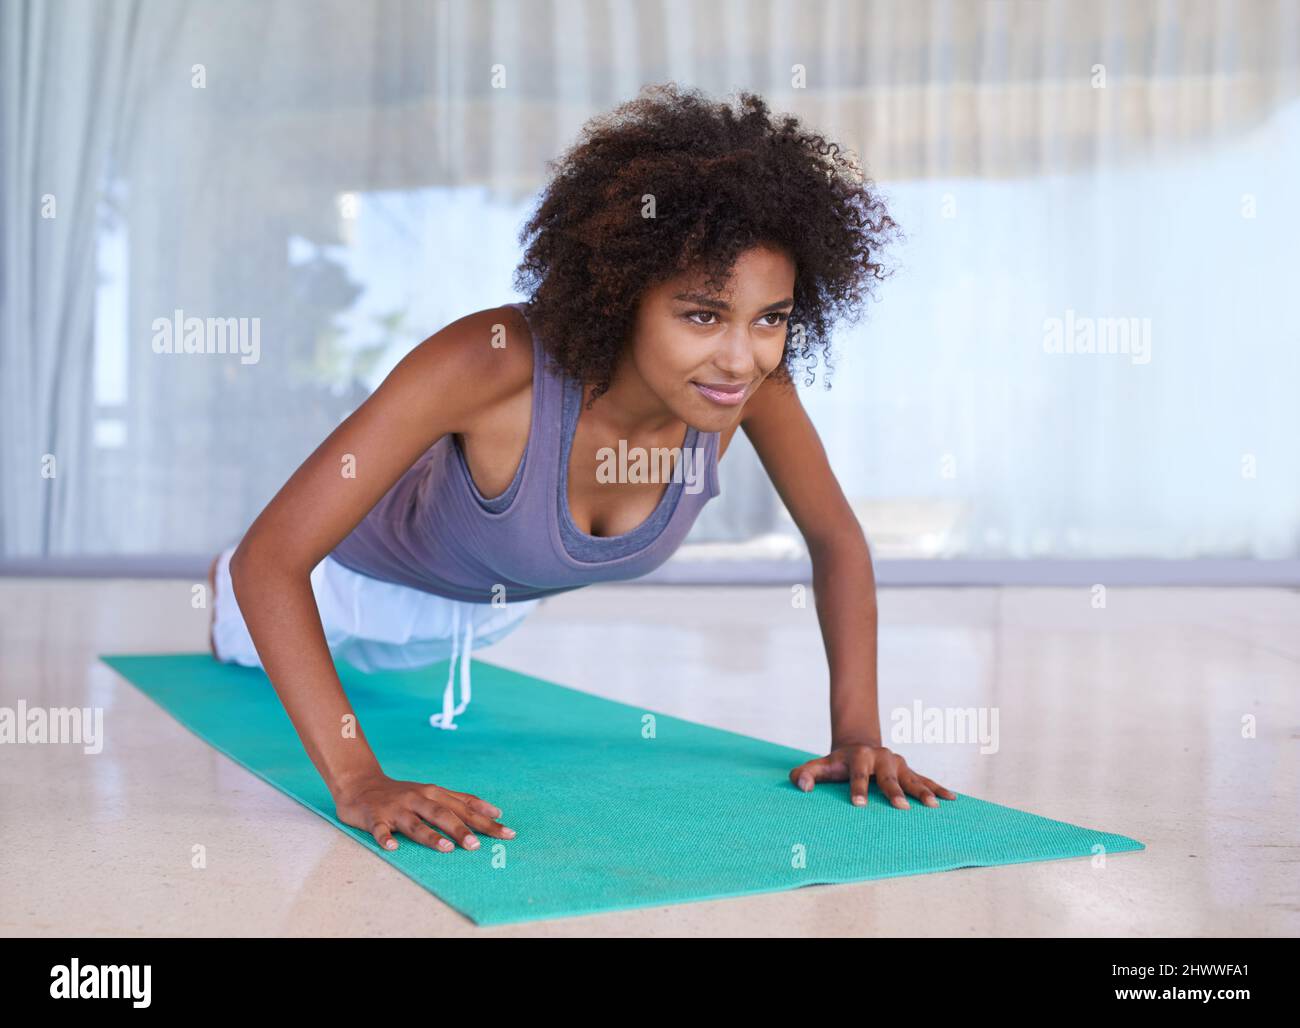 Arbeiten an ihrem Oberkörper. Aufnahme einer attraktiven jungen Frau, die Liegestütze auf einer Trainingsmatte macht. Stockfoto